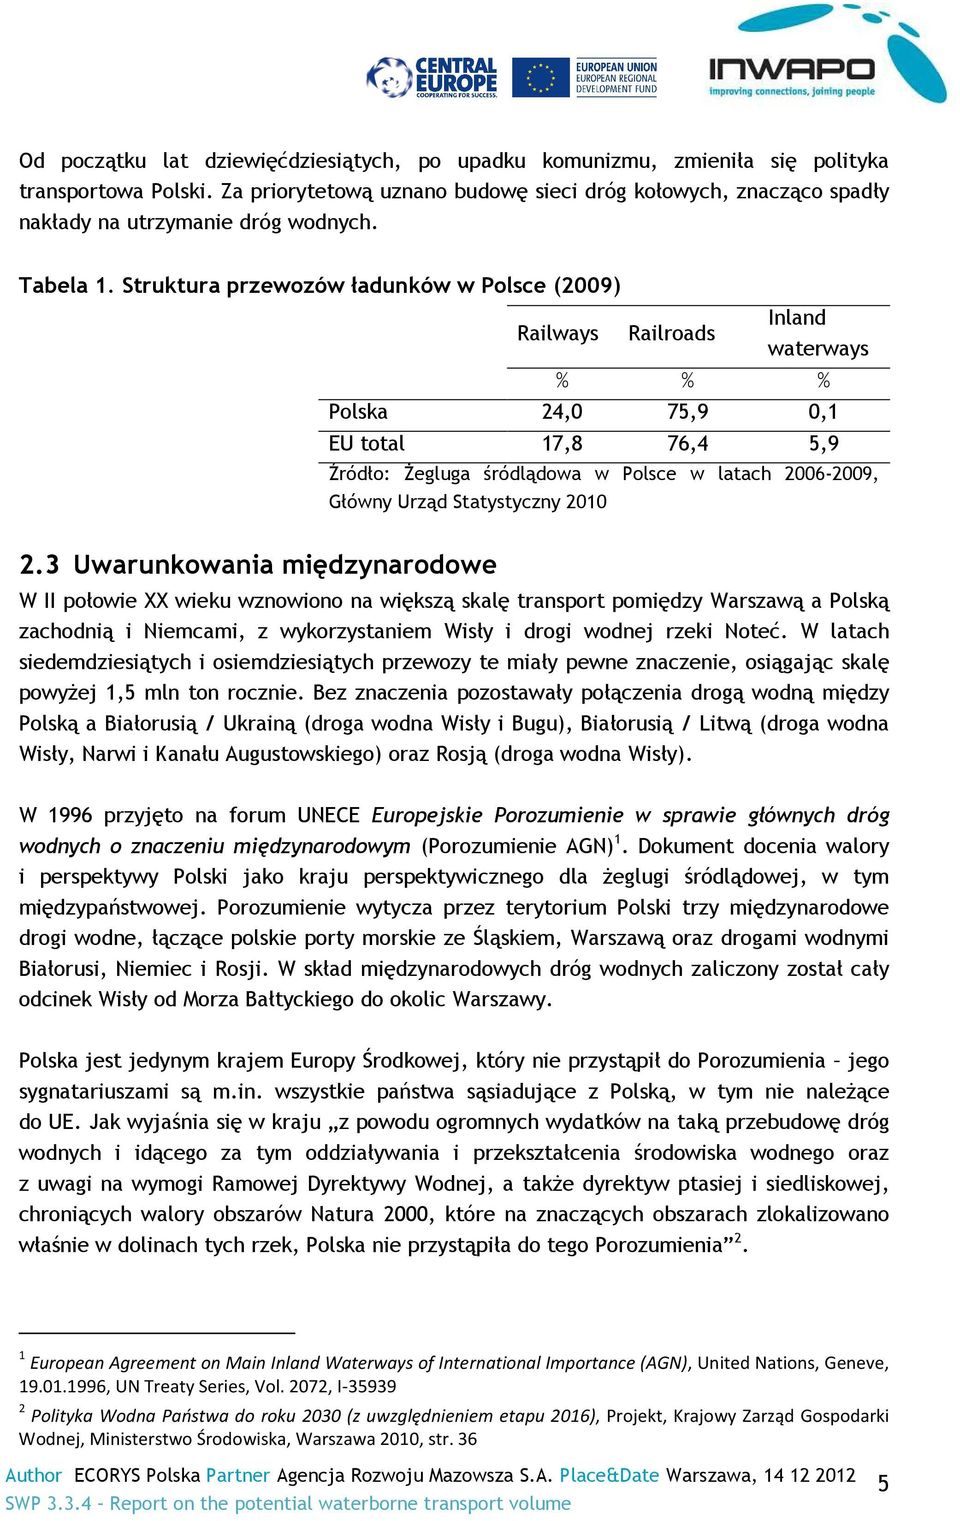 Struktura przewozów ładunków w Polsce (2009) Railways Railroads Inland waterways % % % Polska 24,0 75,9 0,1 EU total 17,8 76,4 5,9 Źródło: Żegluga śródlądowa w Polsce w latach 2006-2009, Główny Urząd